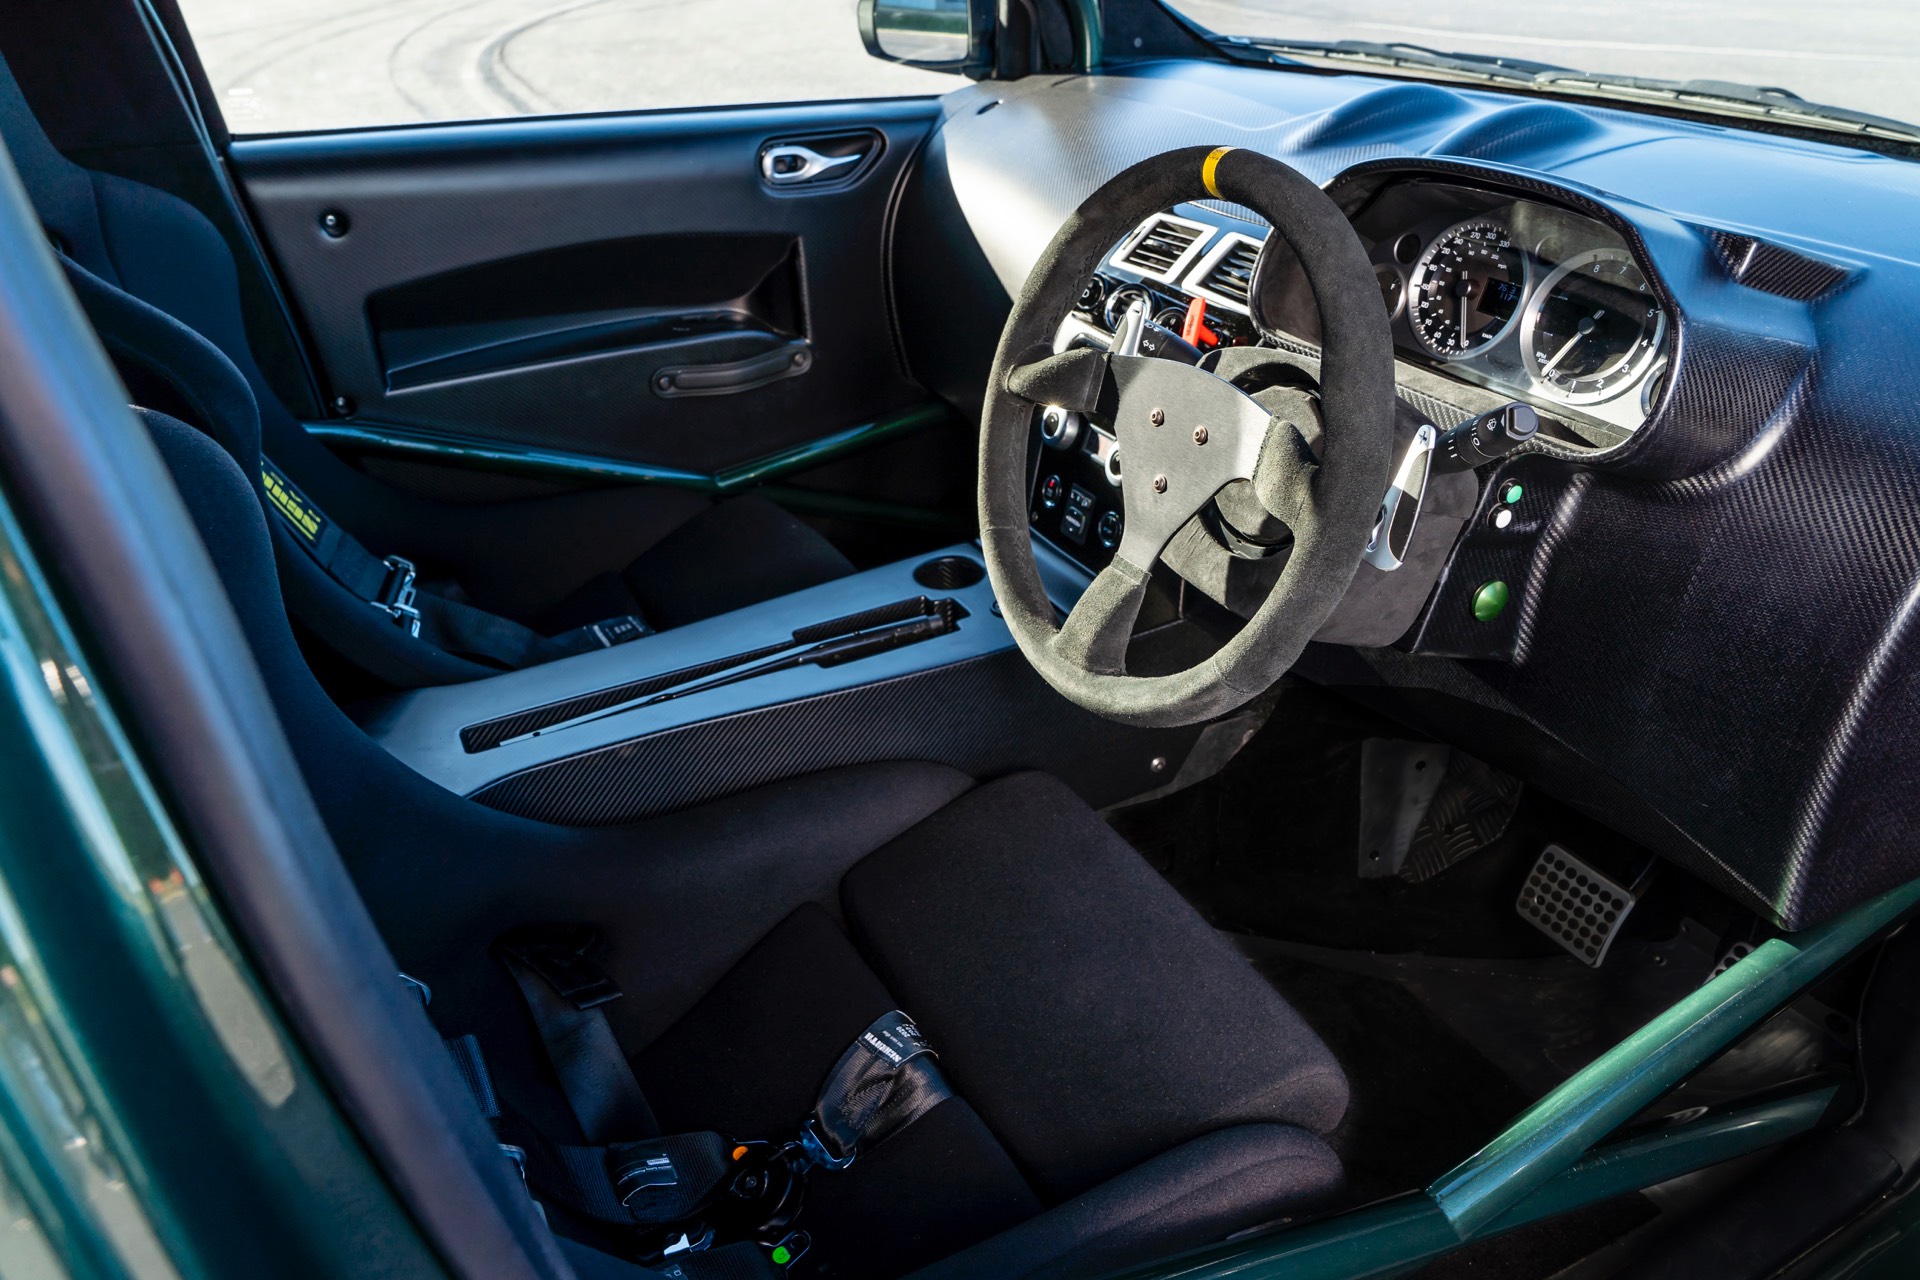 Aston Martin V8 Cygnet